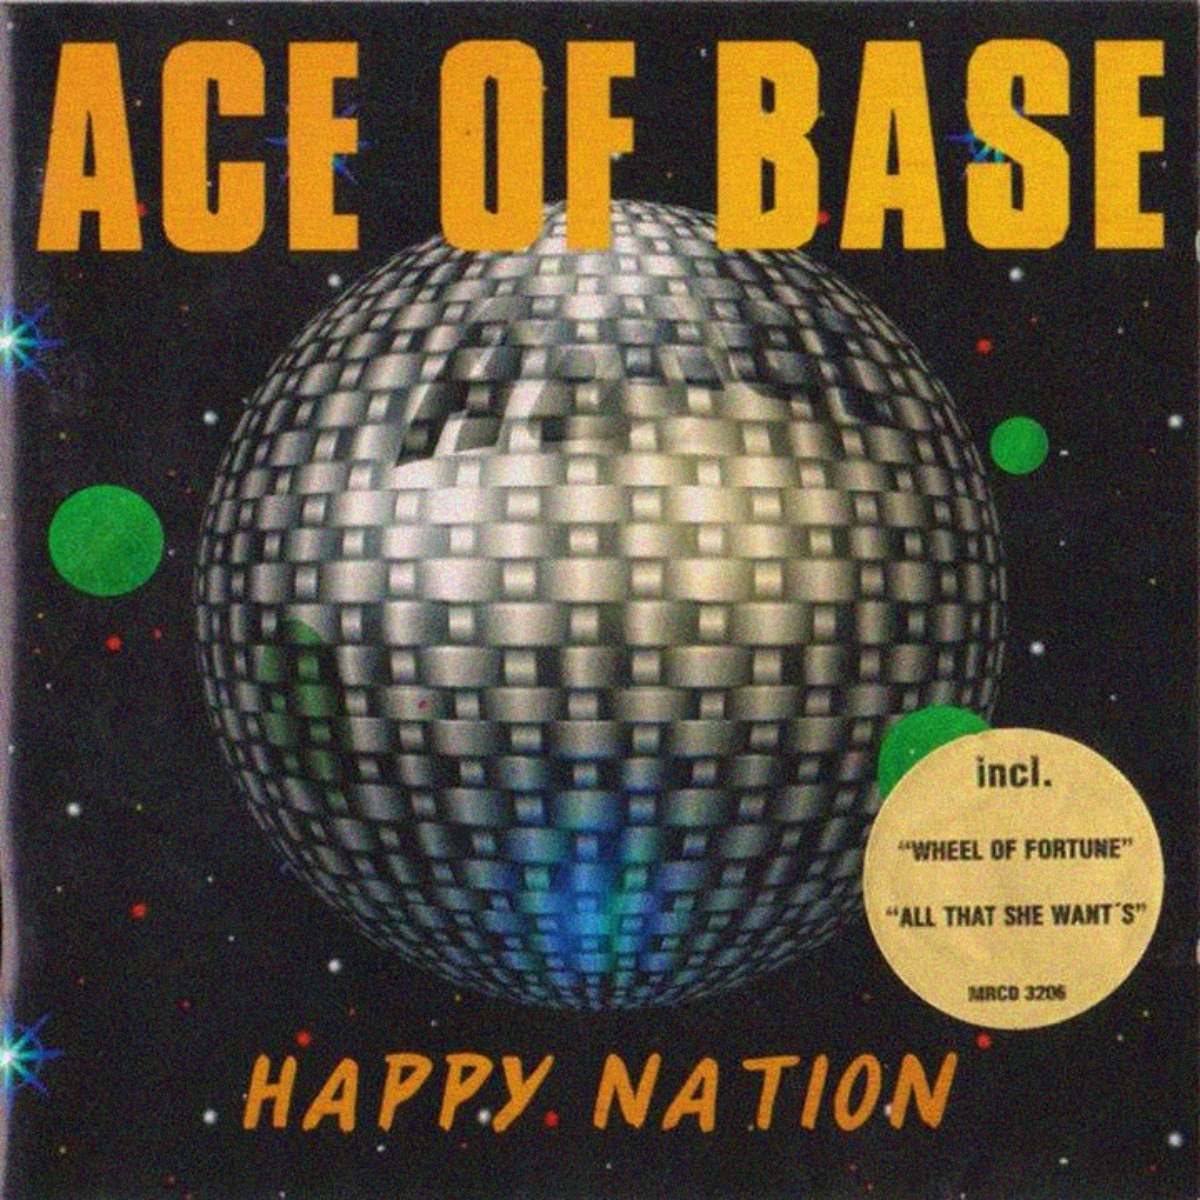 Happy Nation (Ace Of Base album)